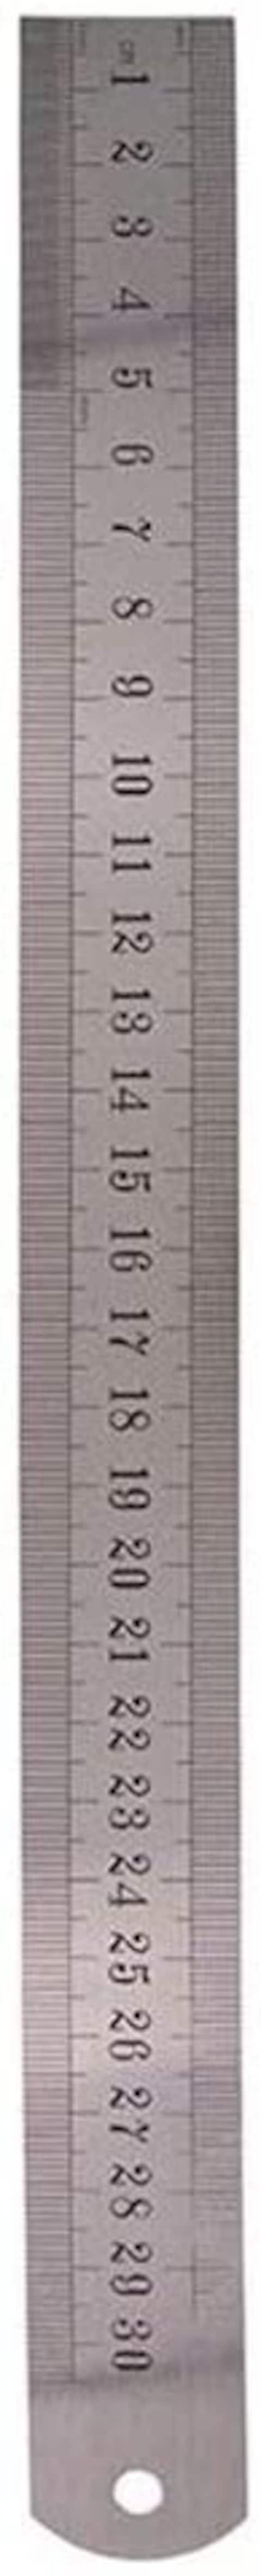 Generic Metal Ruler 30 cm, Silver